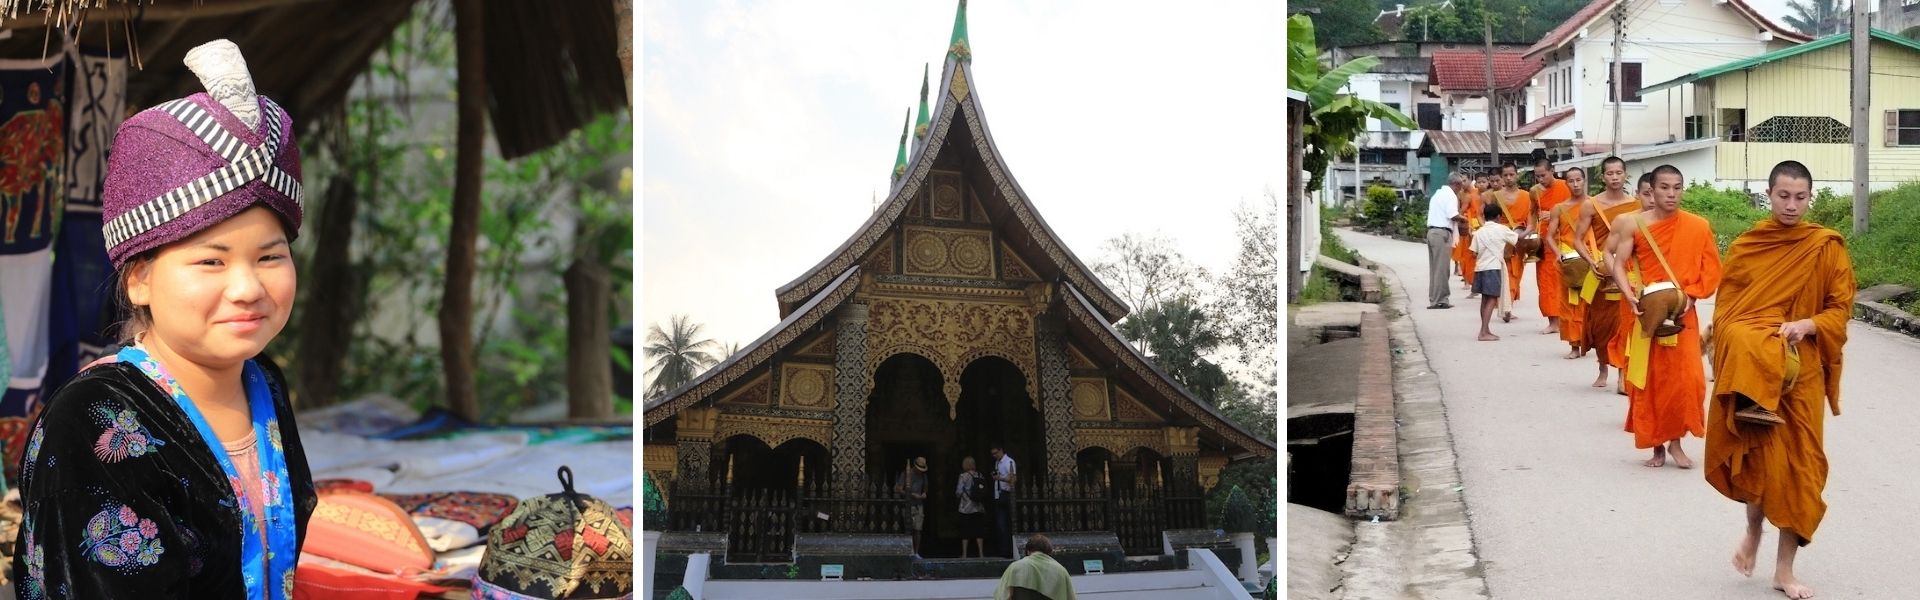 10 esperienze da non perdere a Luang Prabang